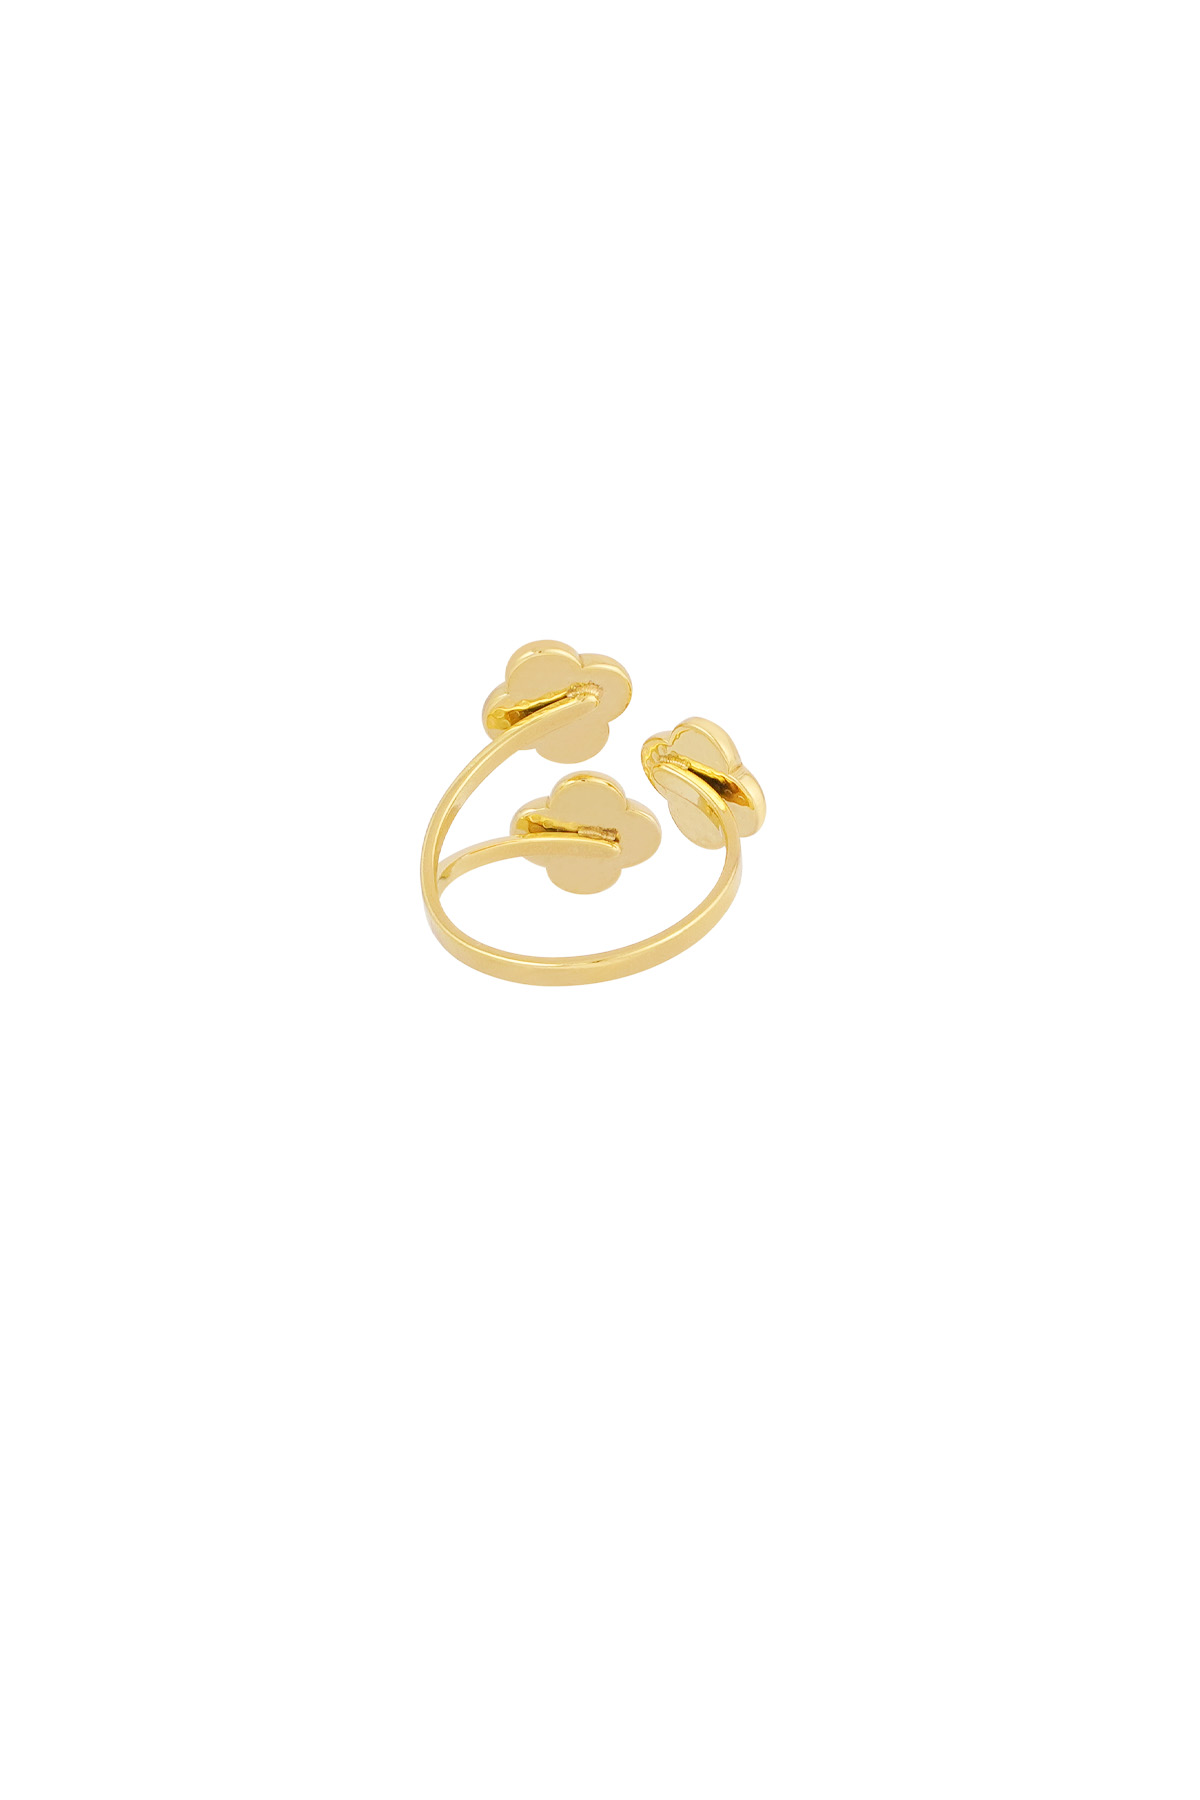 Ring Dreifachklee - Gold Bild3